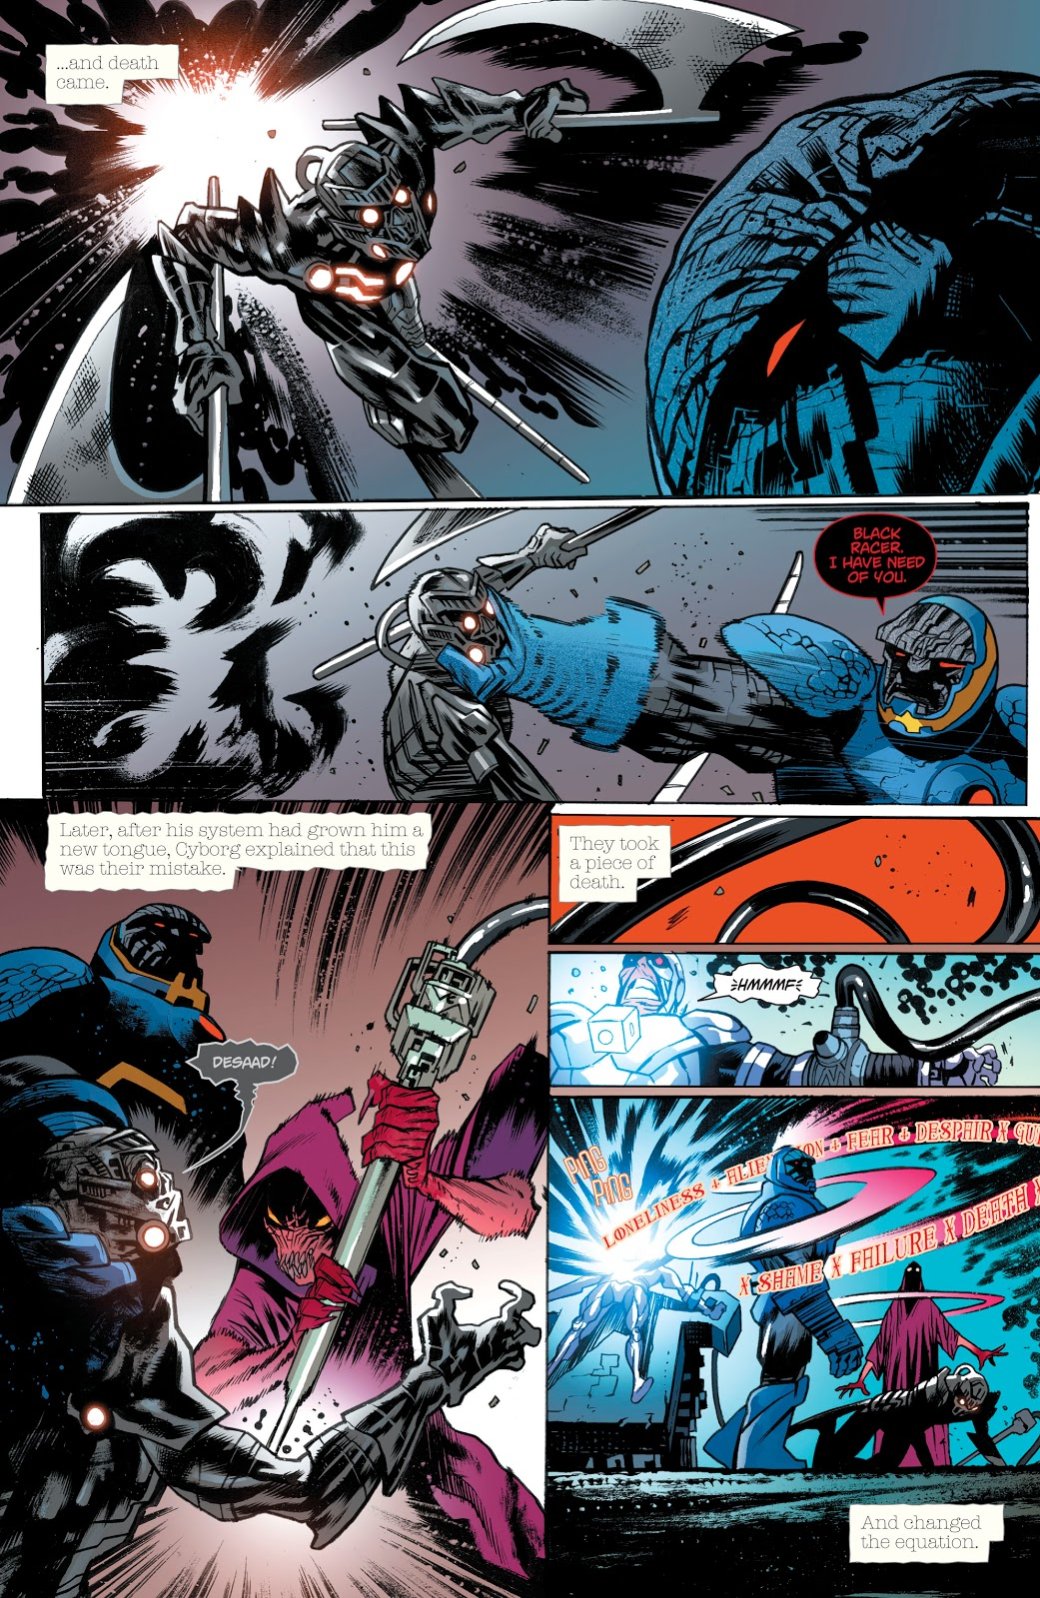 Галерея Бэтмен и Супермен против зомби в одном из самых мрачных комиксов этого года - 3 фото